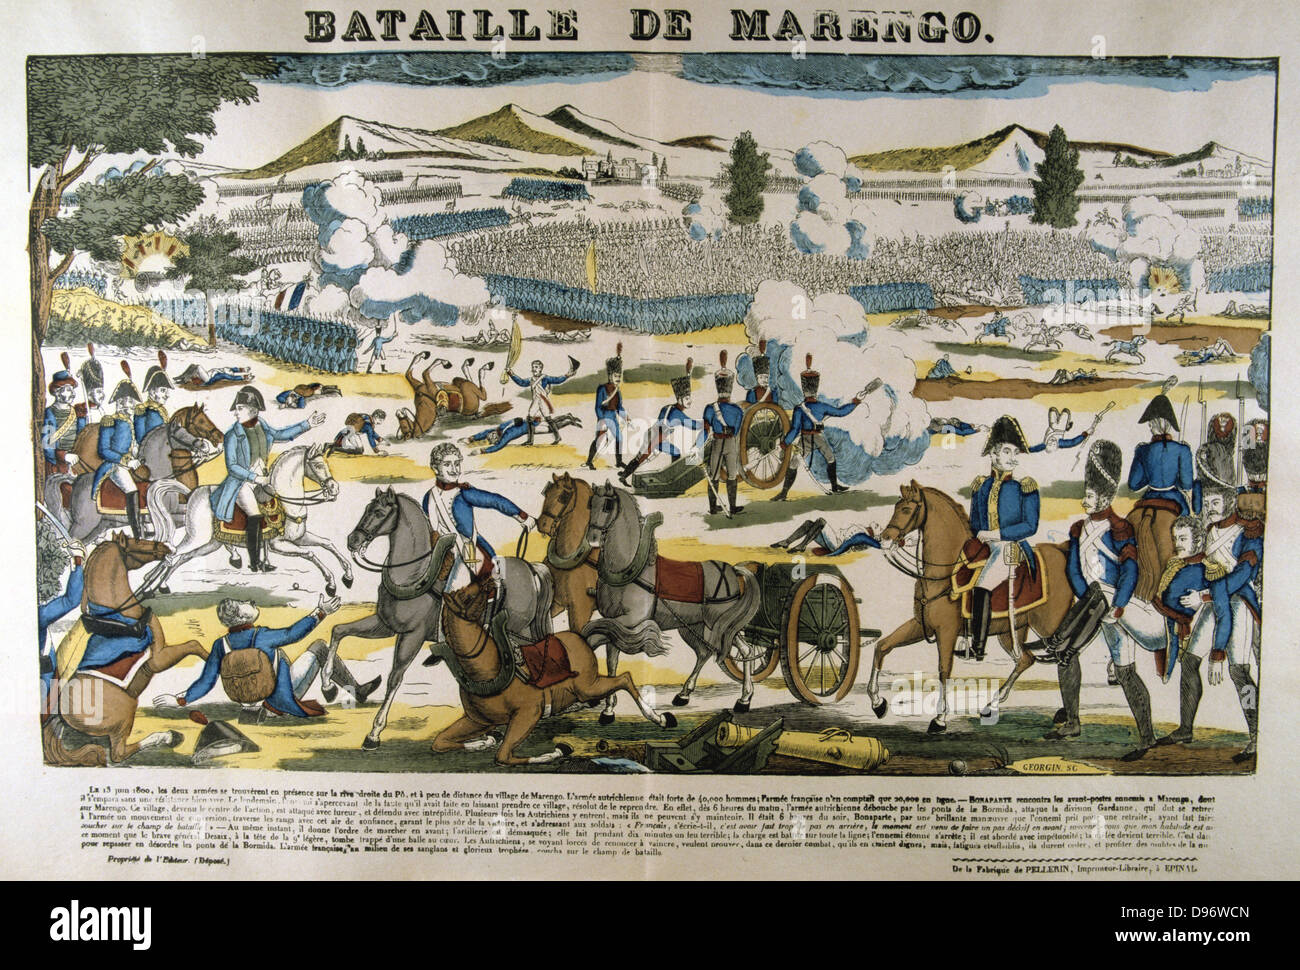 Bonparte, Mitte links, in der Schlacht bei Marengo am 14. Juni 1800. Die französischen Truppen unter Napoleon besiegt Österreicher. Beliebte Französische handkolorierter Holzschnitt. Stockfoto